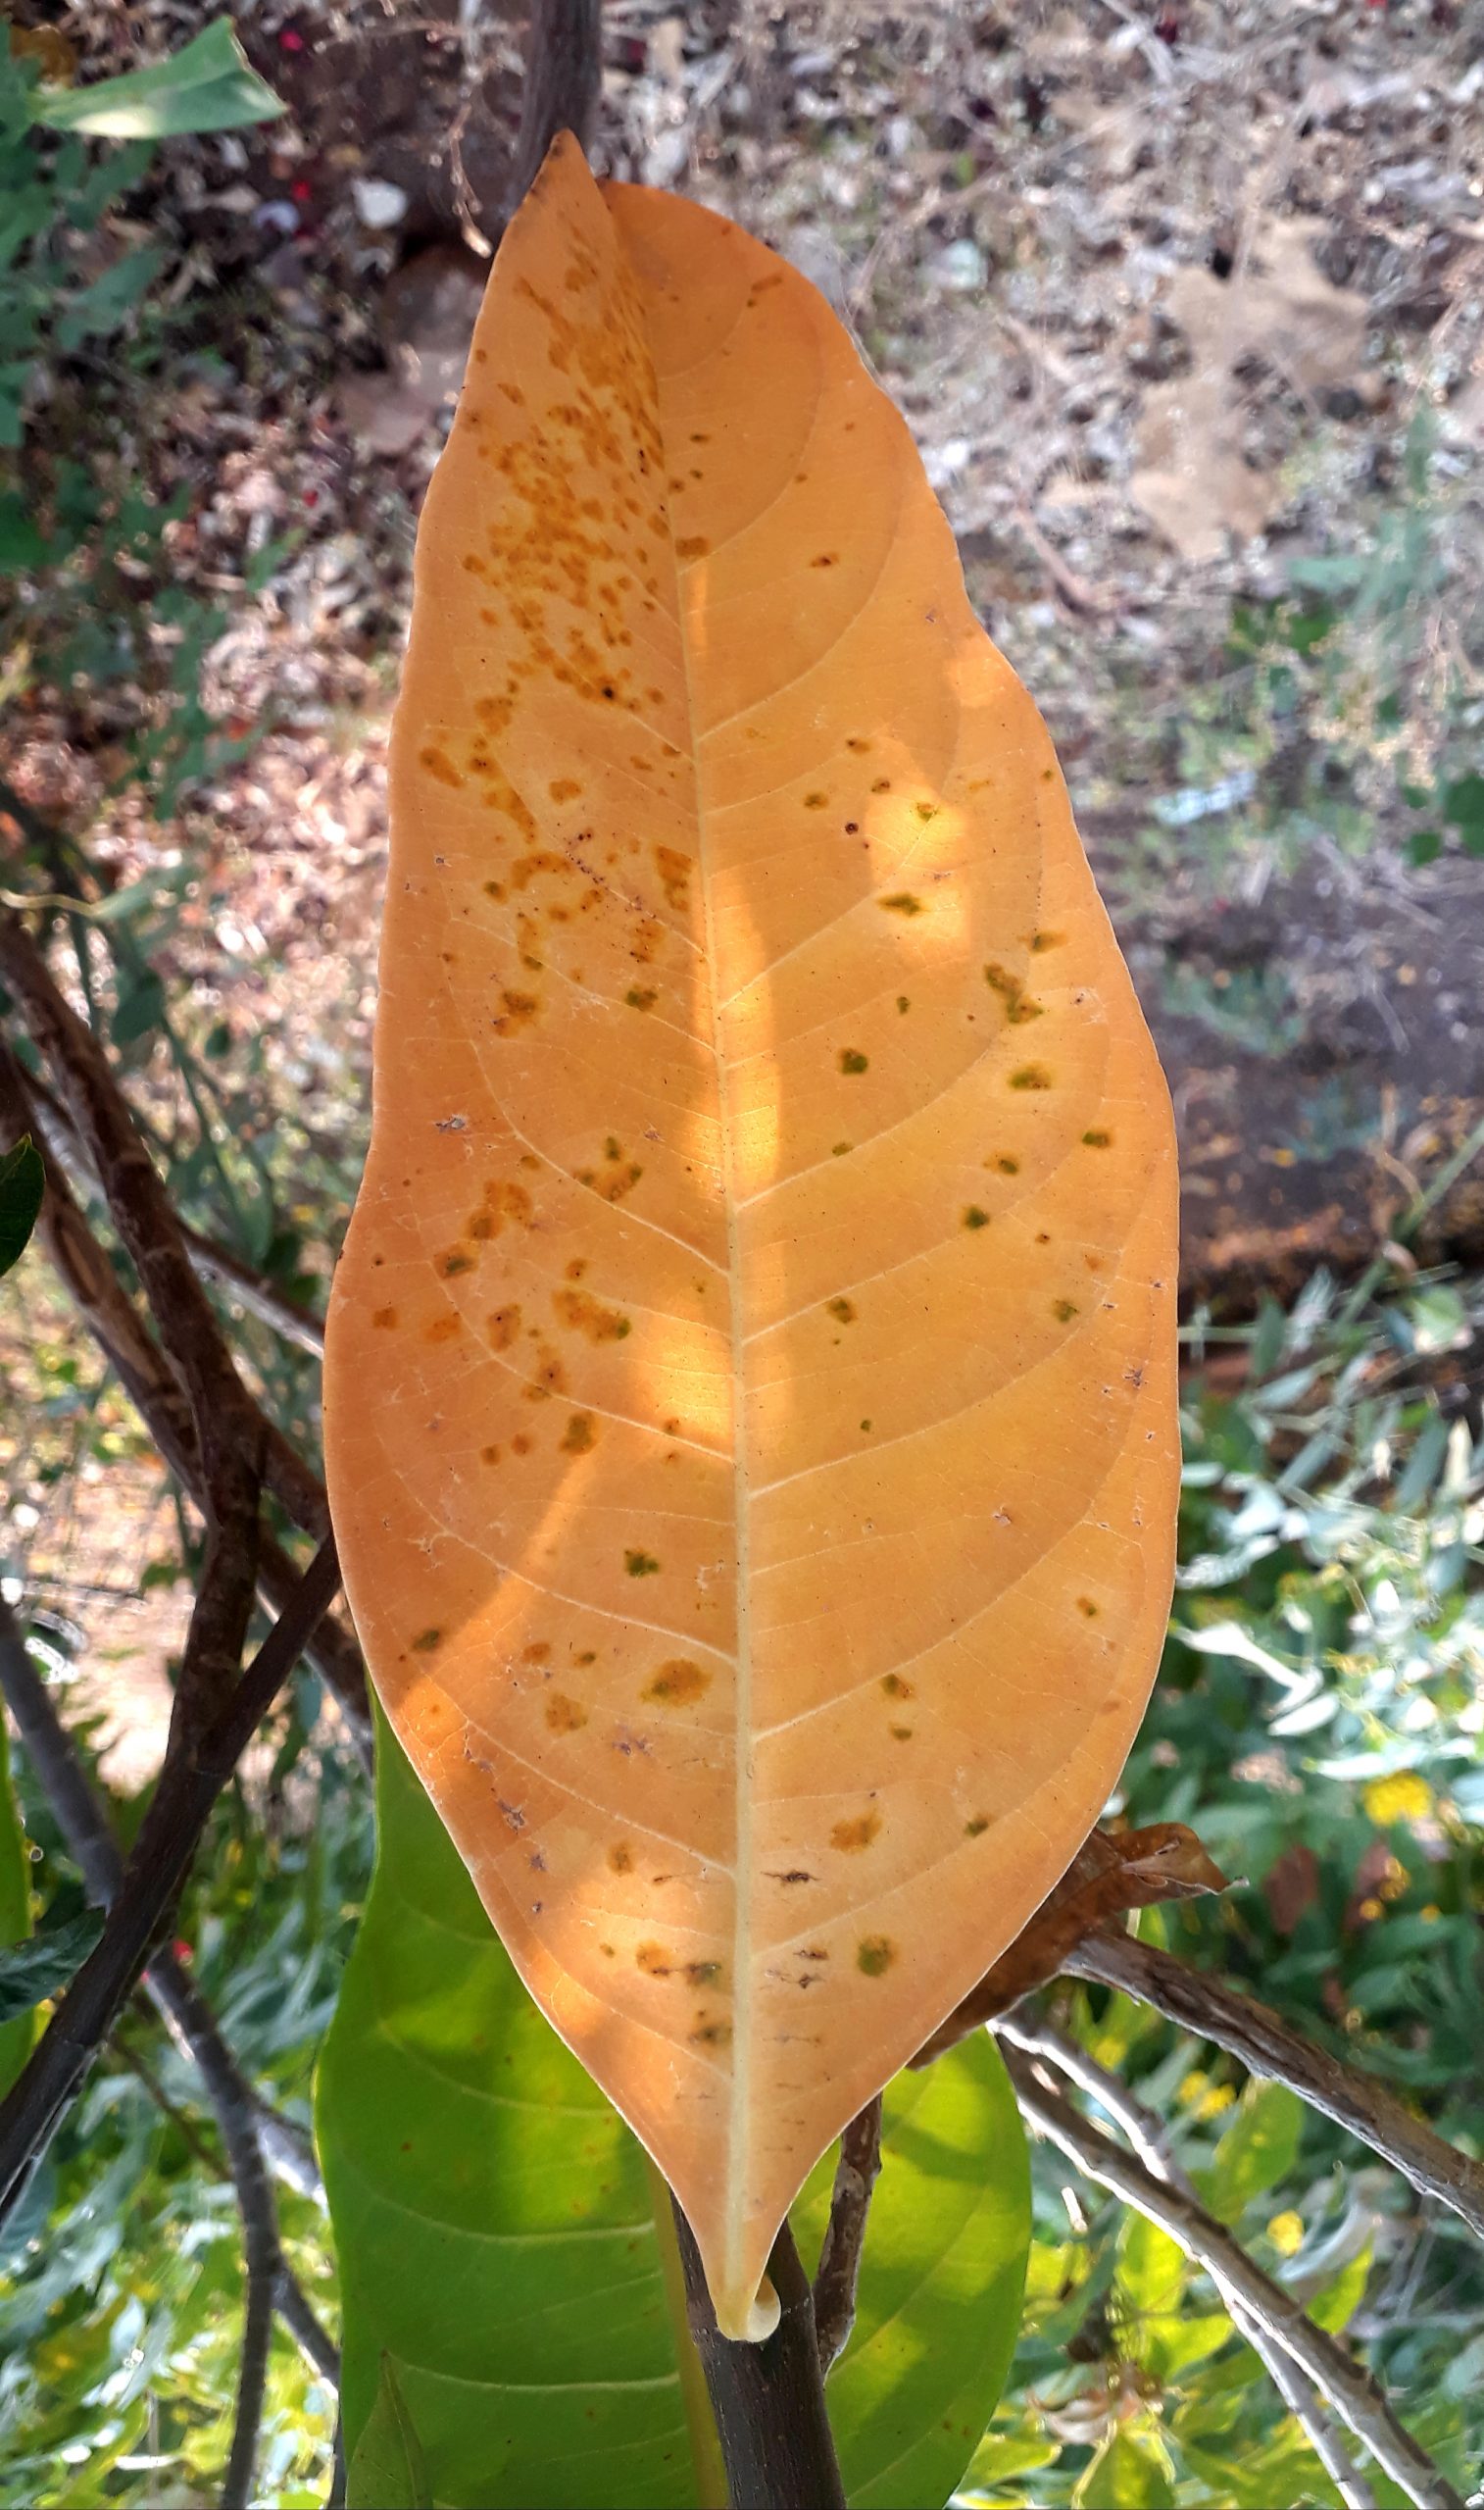 Dry leaf on the tree